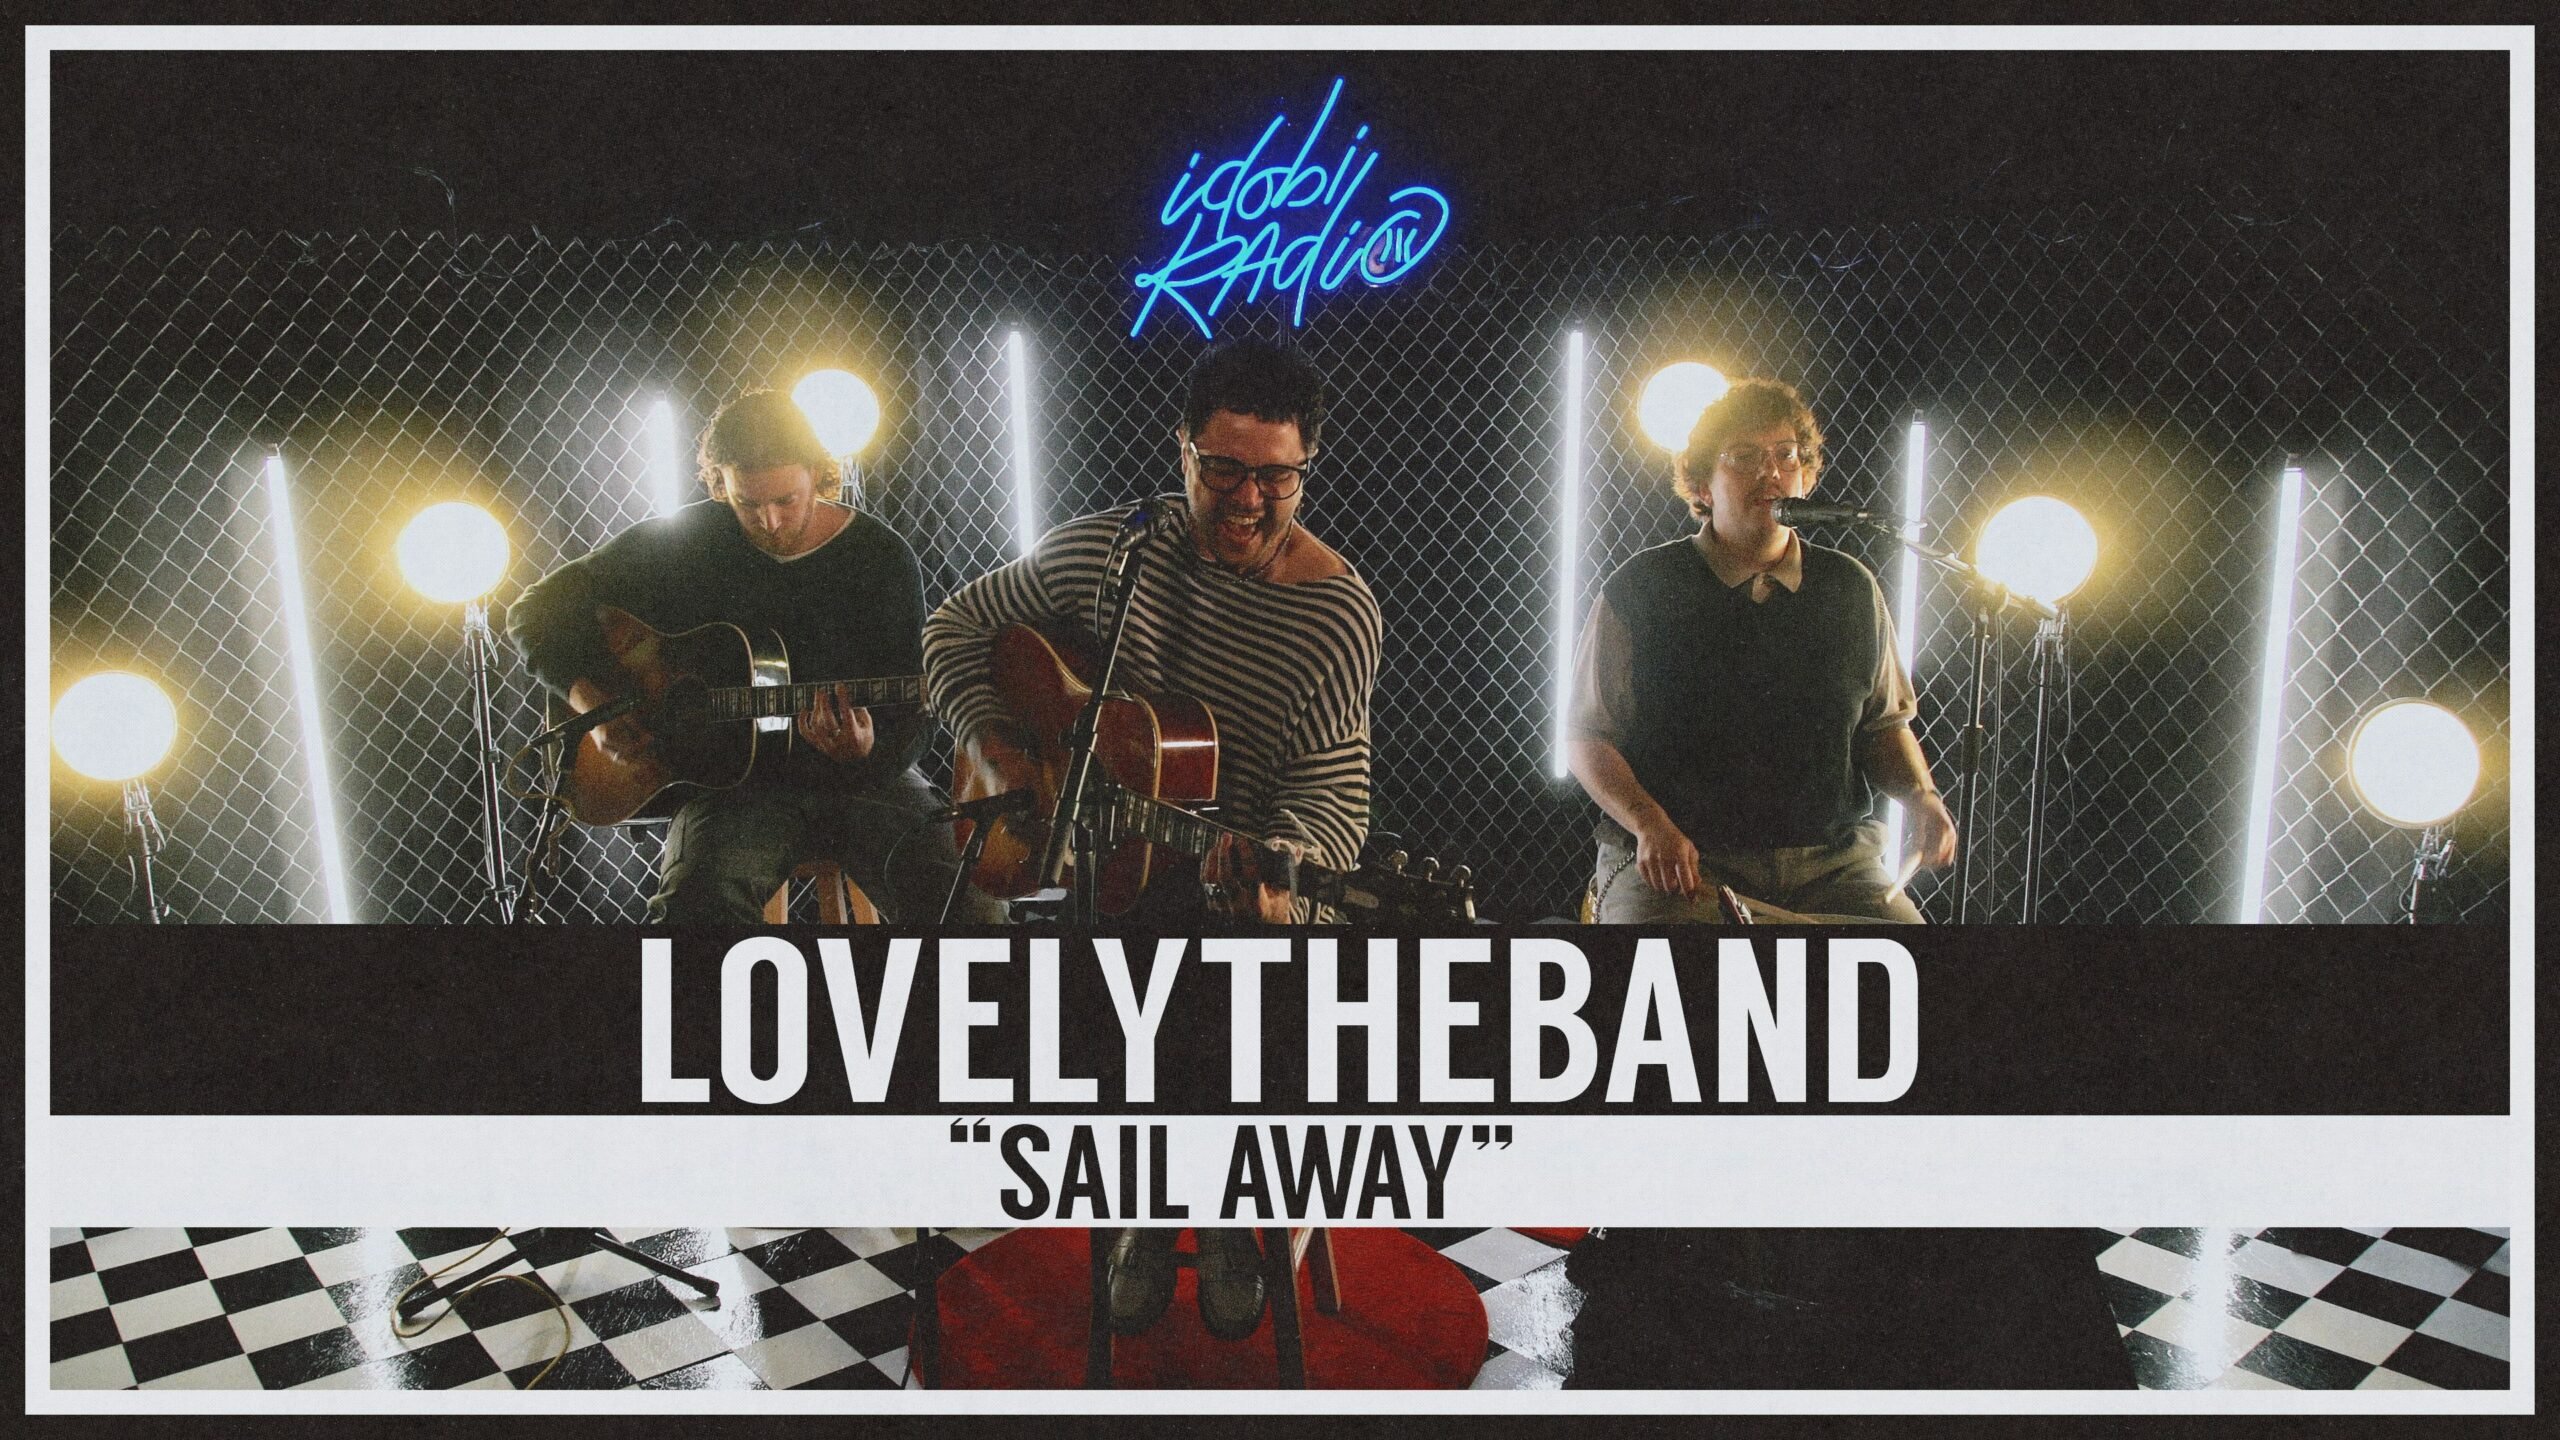 lovelytheband perform "sail away" at idobi Studios